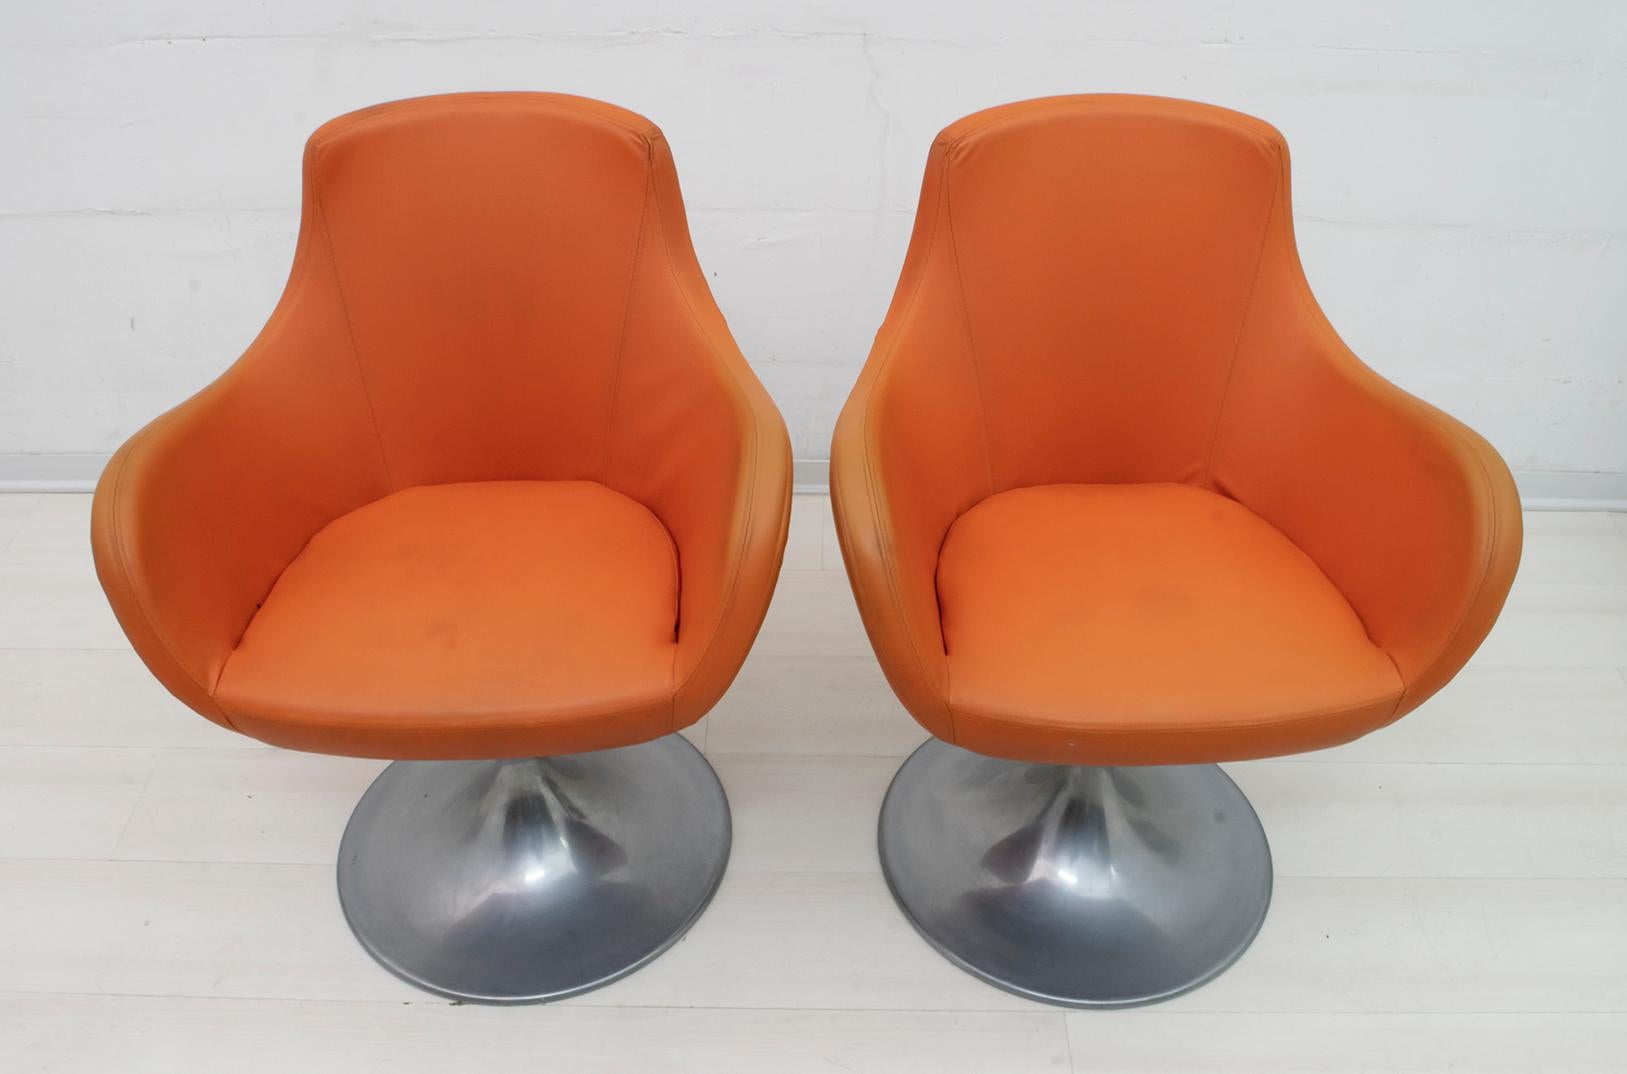 Dieses Paar Sessel, typisch italienisches Design der 1960er Jahre, ist mit Öko-Leder gepolstert und das Drehgestell ist aus Aluminium.